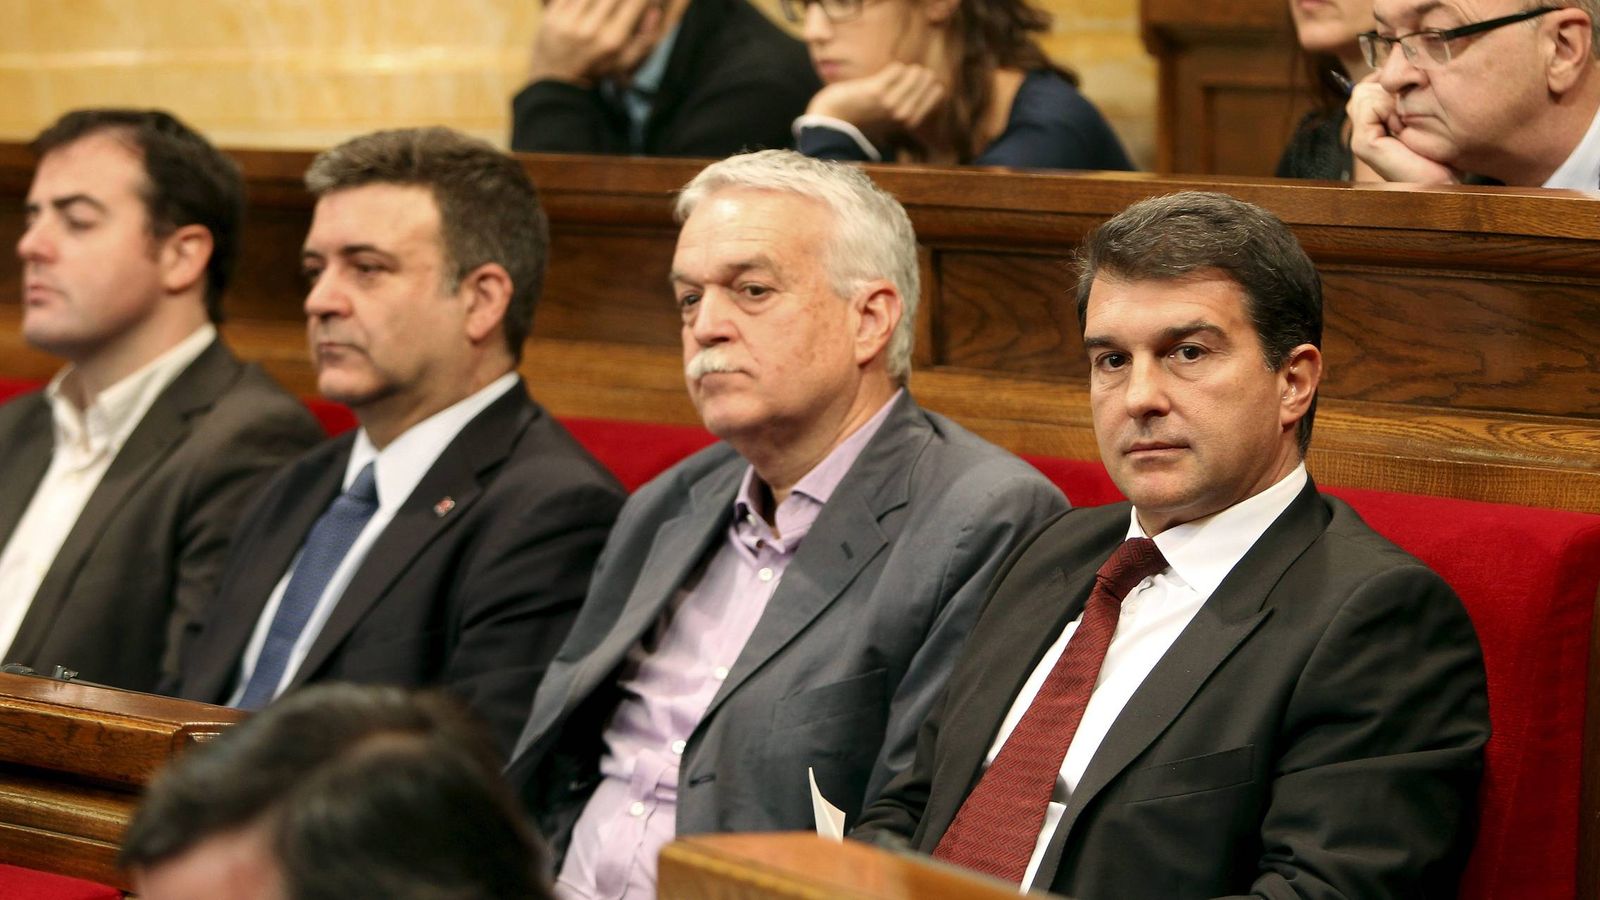 Joan Laporta, acompañado por sus entonces compañeros de partido, entre ellos, Uriel Bertran (izquierda). (EFE/ Andreu Dalmau)